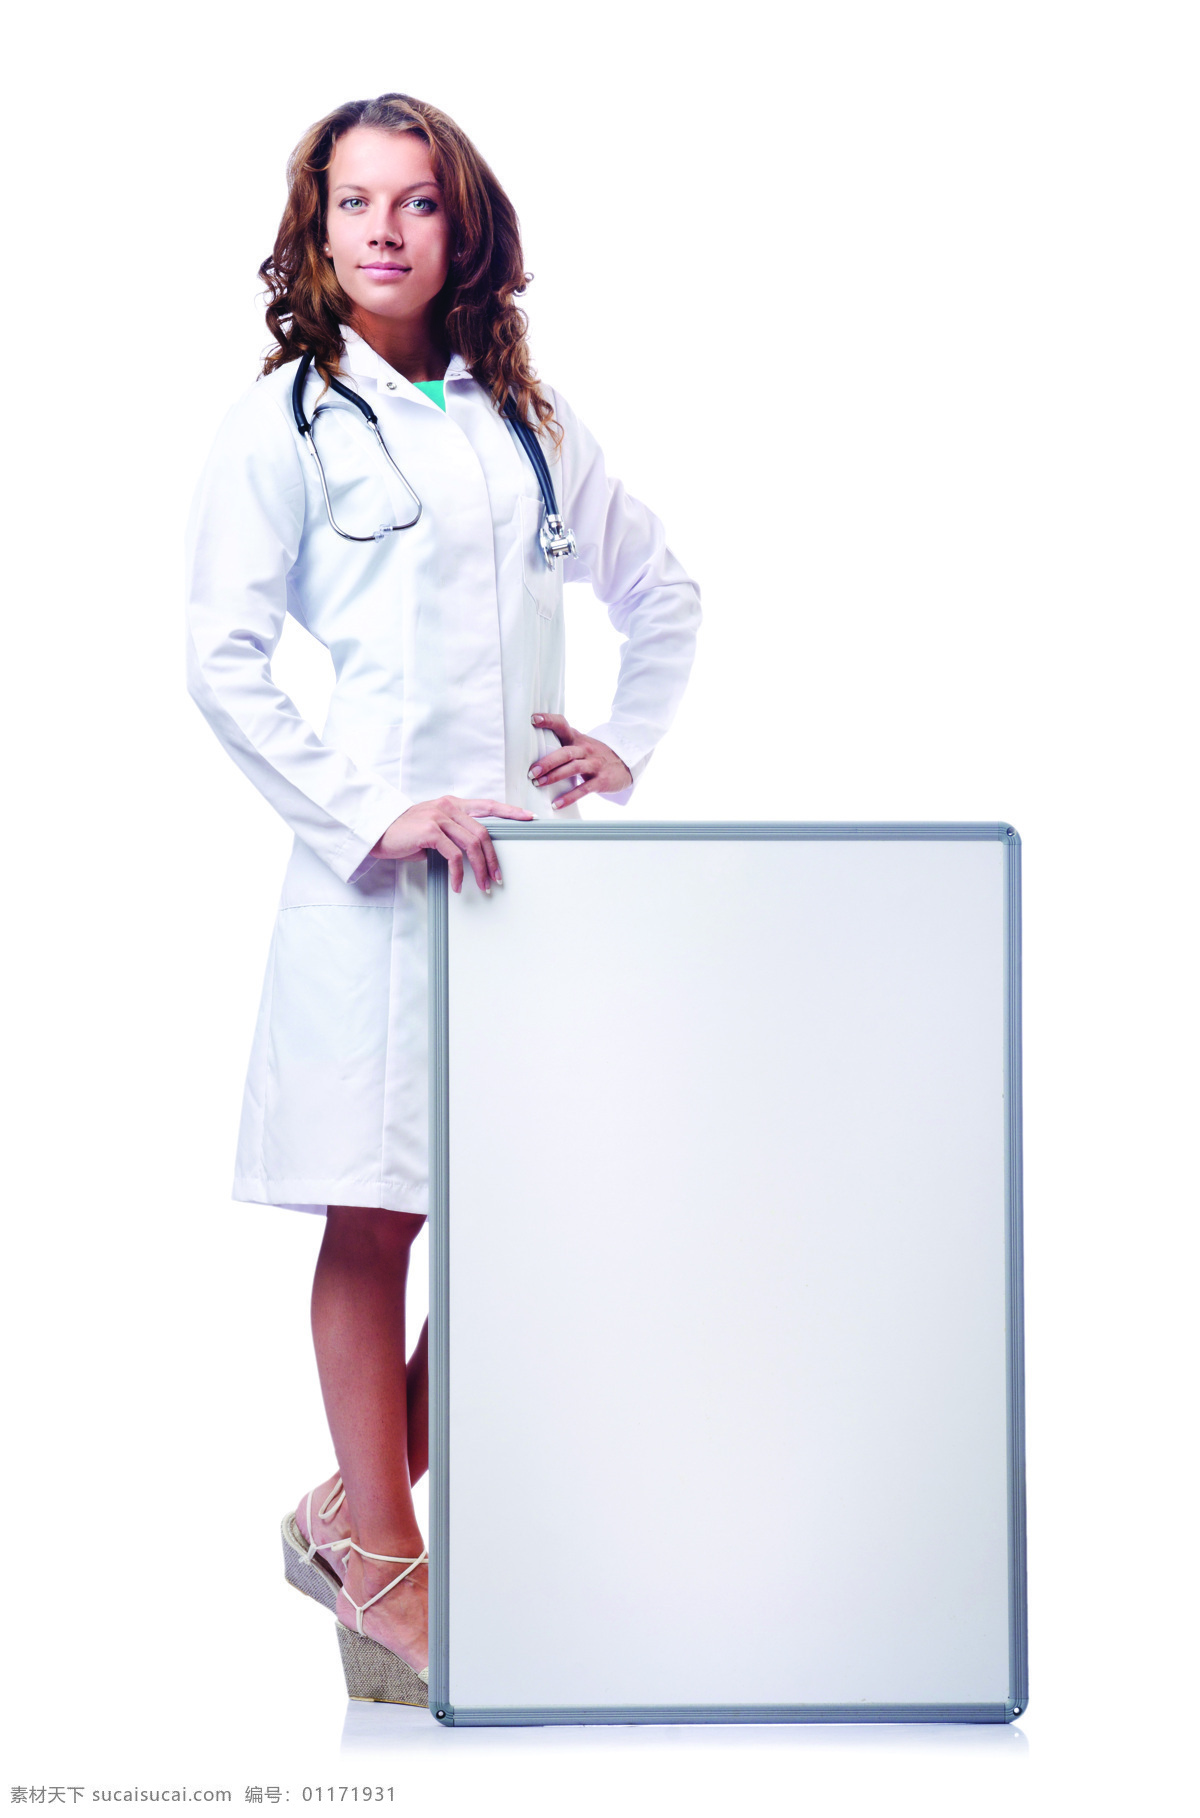 美女 医生 广告牌 美女医生 性感美女 职业女性 护士 白板 美女图片 人物图片